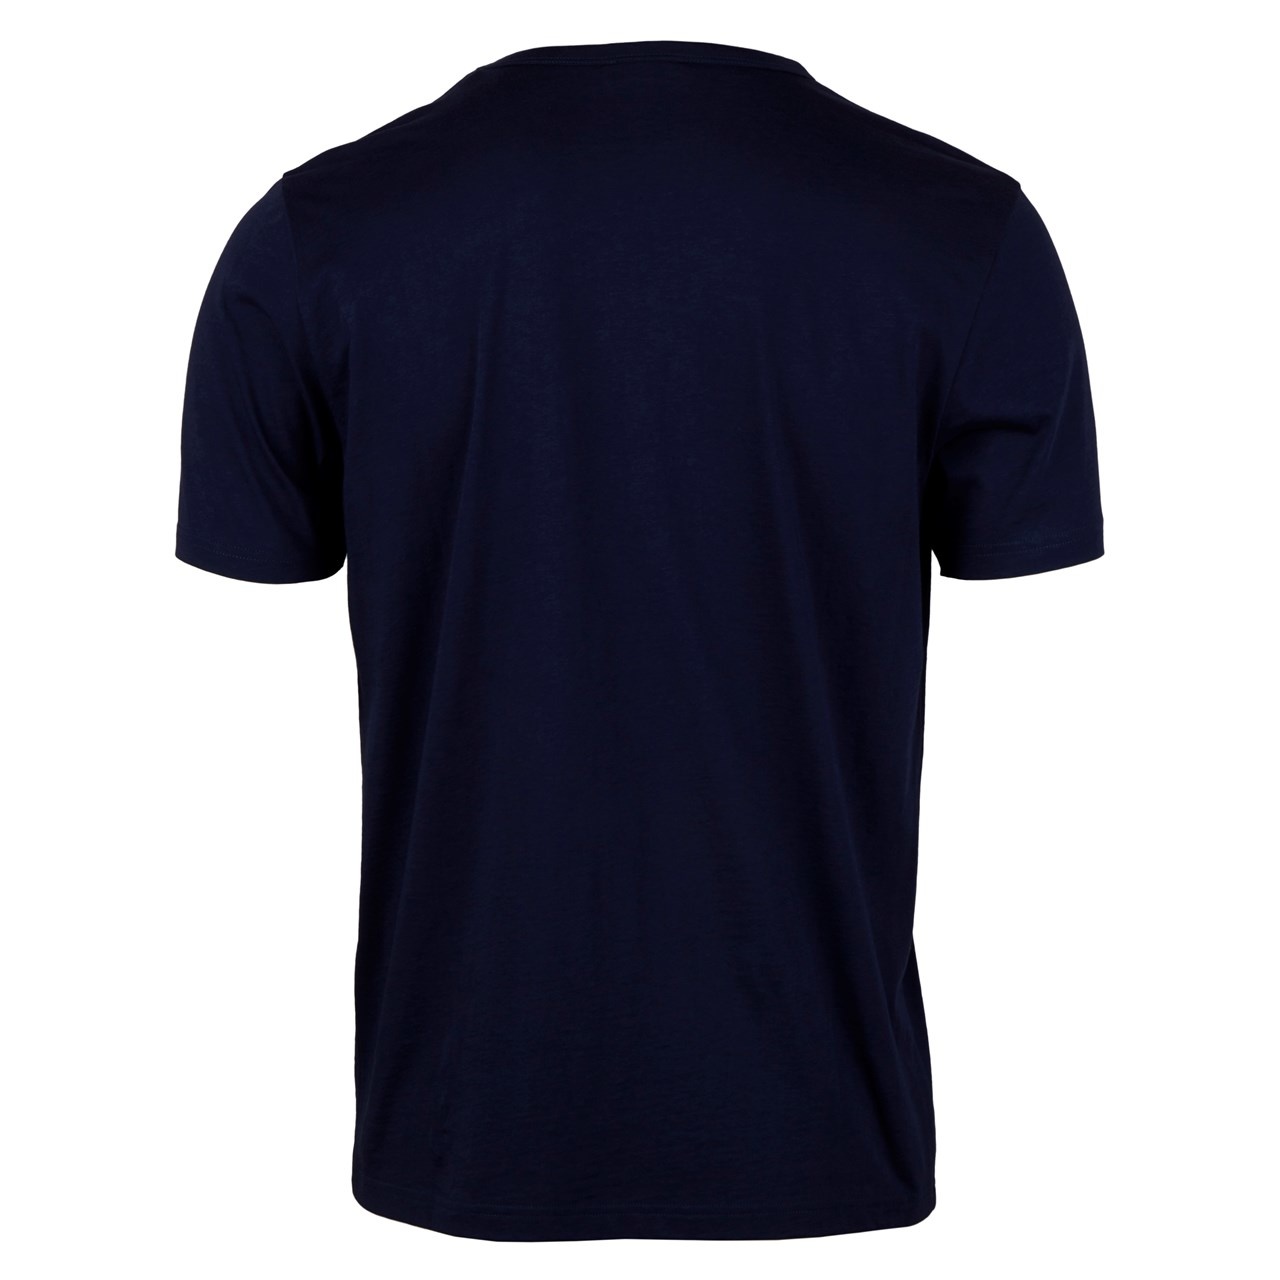 Stenstroms Navy cotton T-shirt